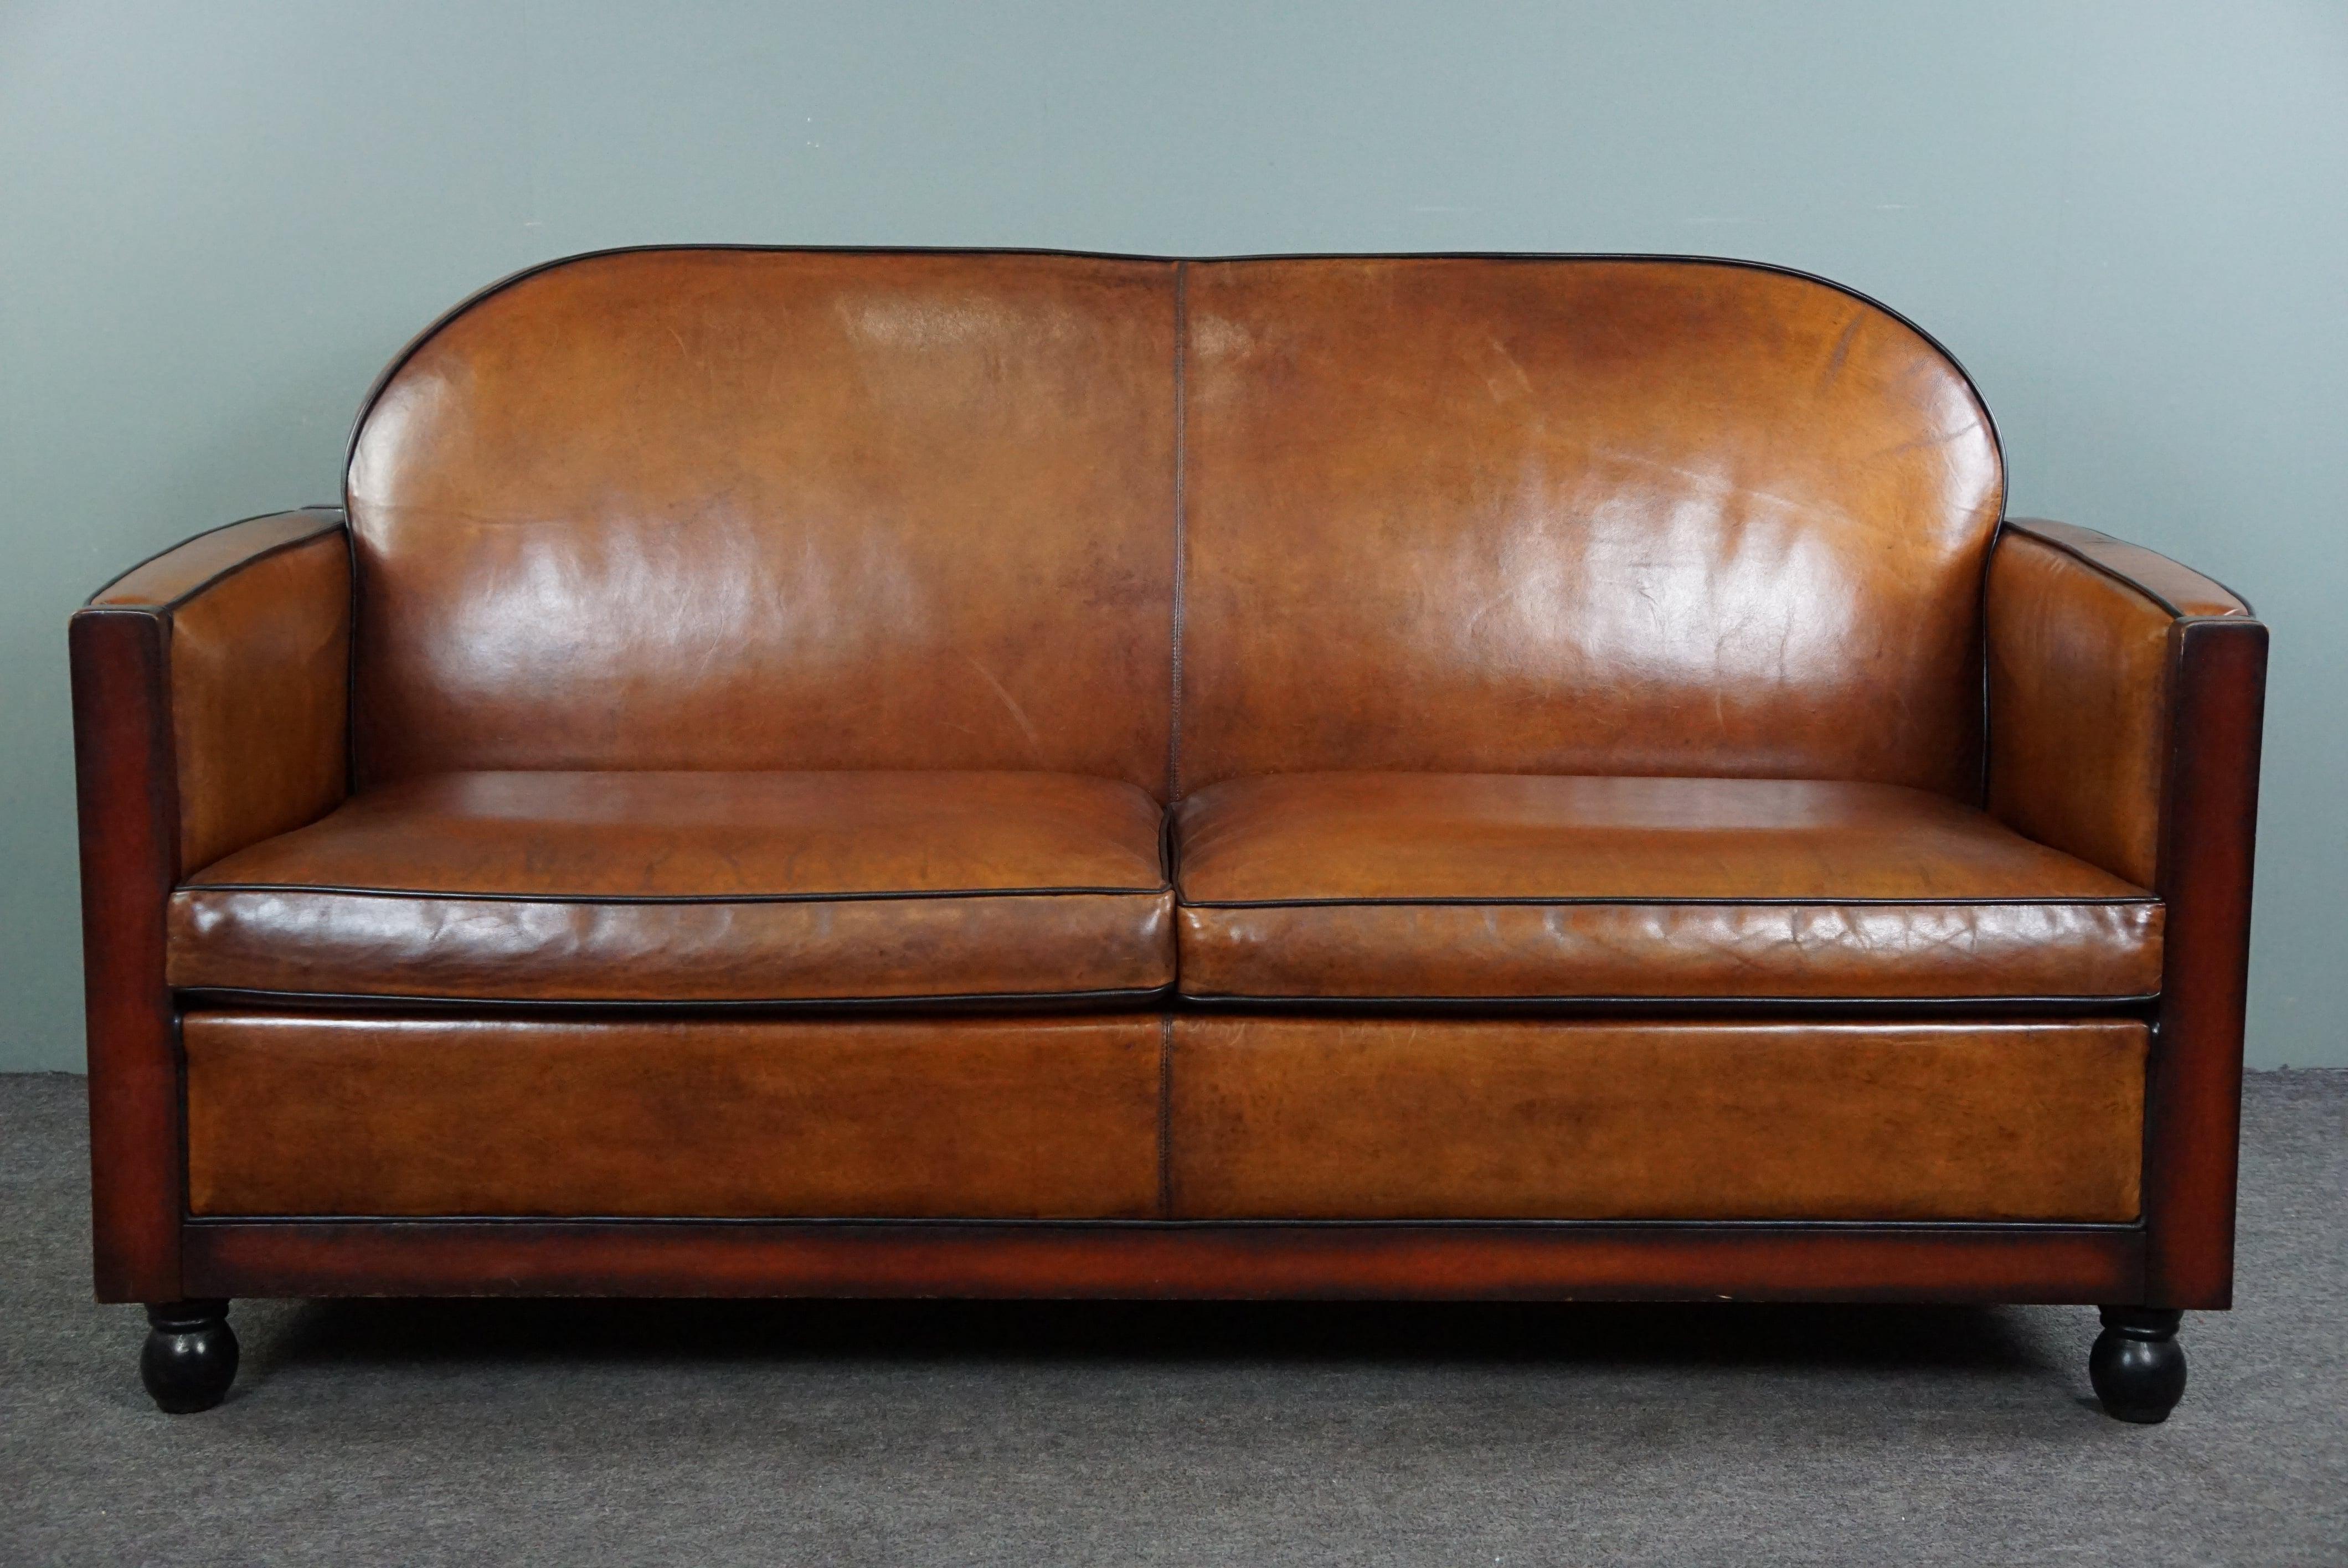 Angeboten wird dieses sprechende Schafsfell Art Deco 2,5-Sitzer-Sofa in sehr gutem Zustand.

Was für Farben und was für ein Look! Dieses wunderschön schlichte und gut sitzende Art-Deco-Sofa ist aus Schafsleder gefertigt, hat schöne Farben und ist